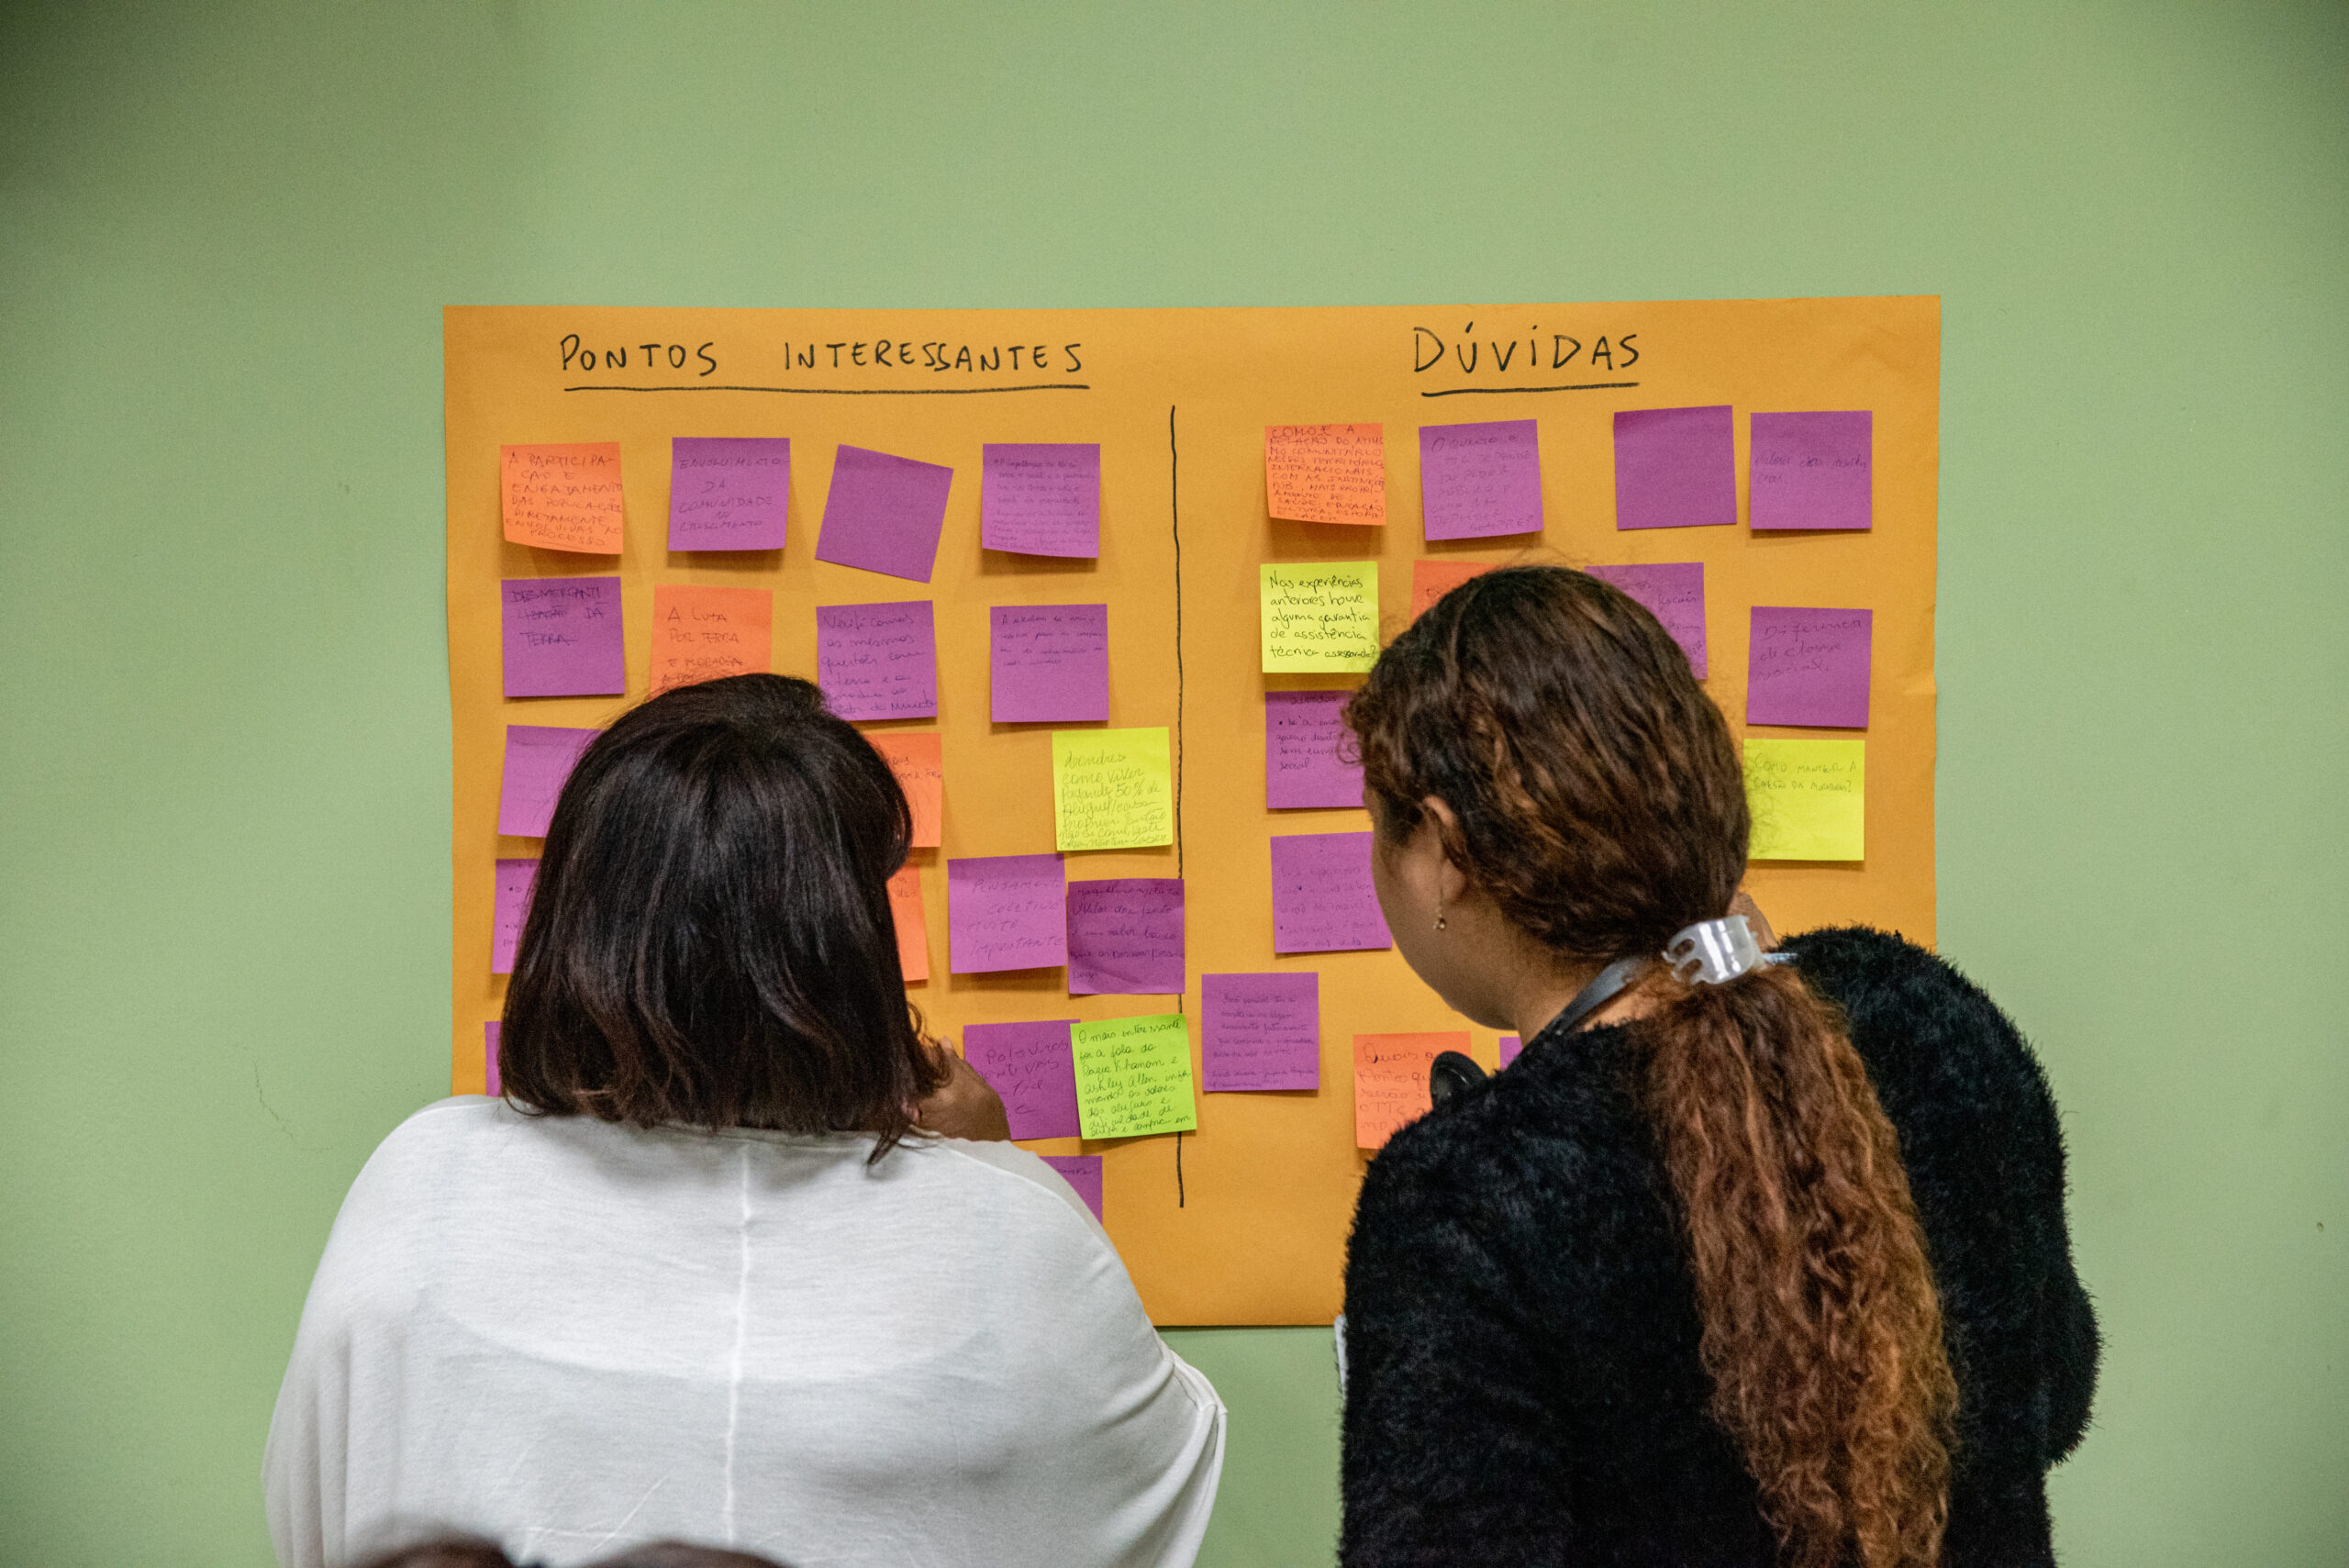 Participantes do evento escreveram sobre os pontos interessantes e dúvidas sobre as falas dos convidados Foto: Bárbara Dias